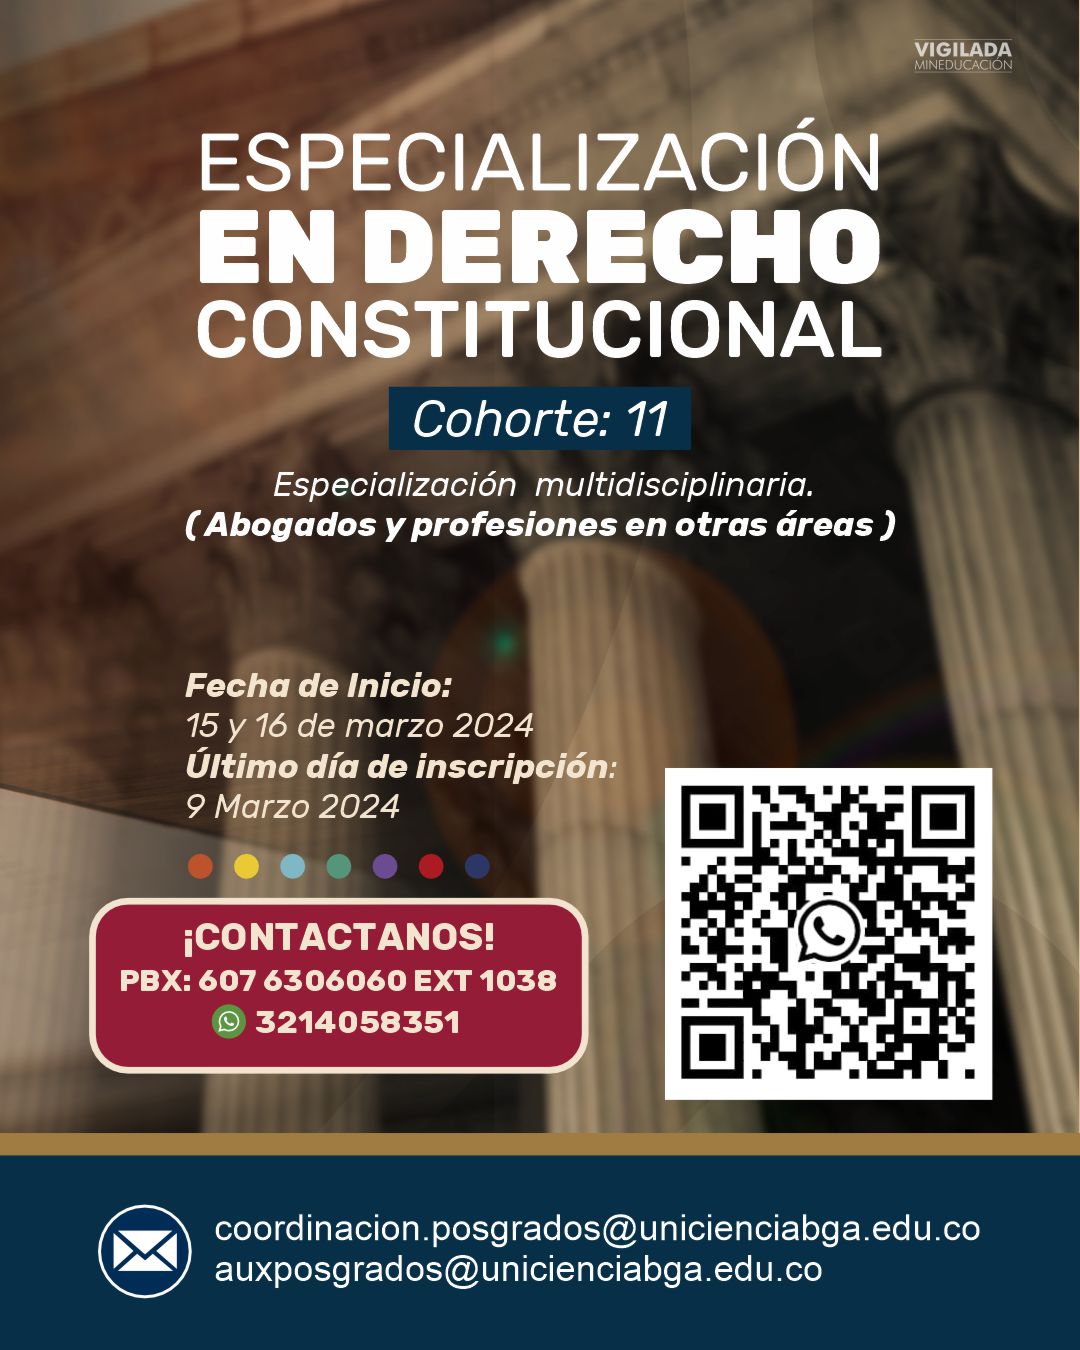 Preinscripciones Especialización en Derecho Constitucional Cohorte 11 - UNICIENCIA